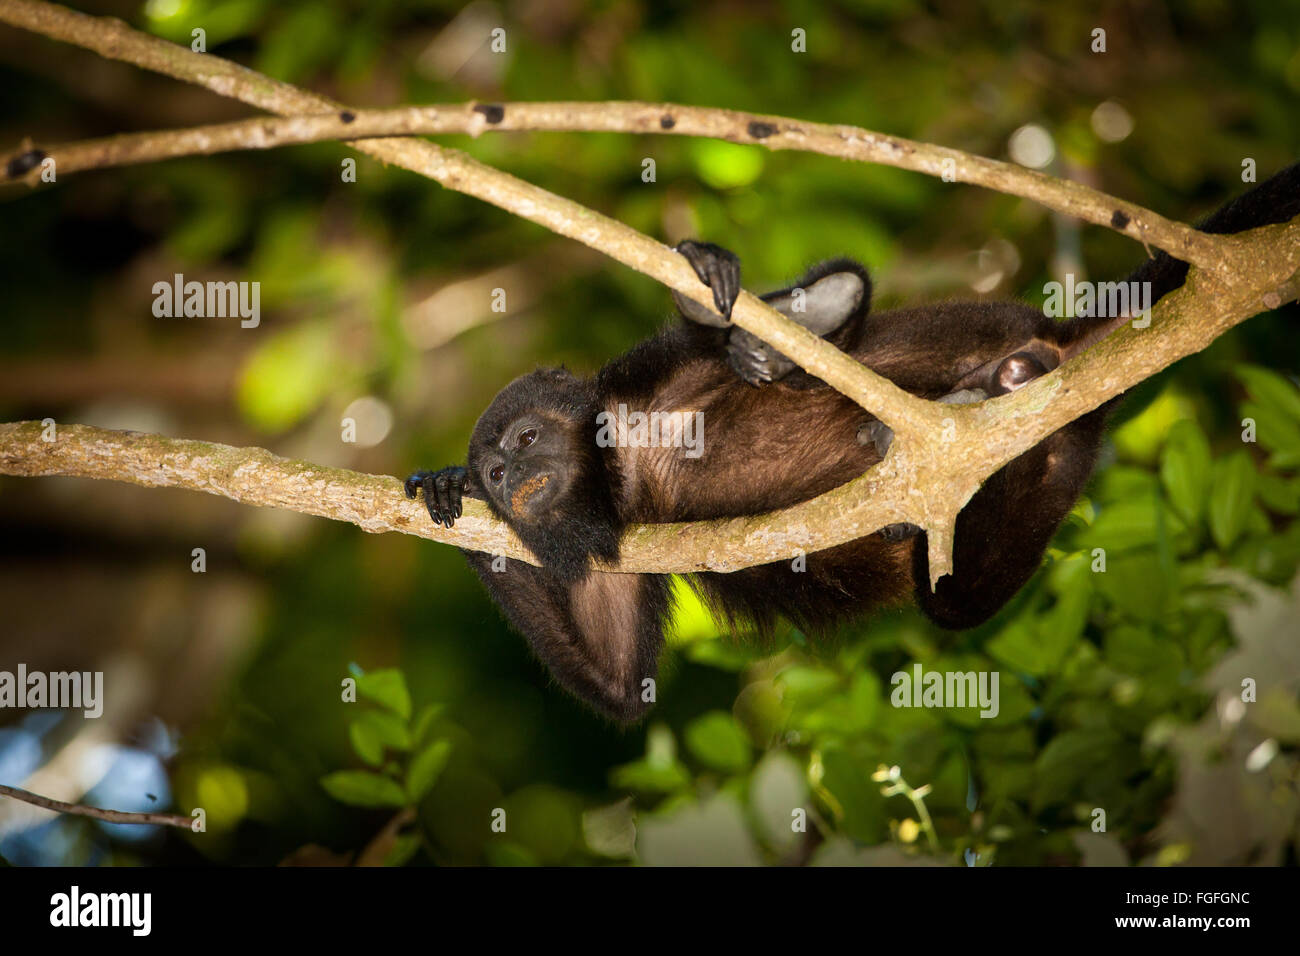 Coiba Howler Monkey, Alouatta coibensis, inside the rainforest at Coiba national park, Pacific ocean, Republic of Panama, Central America Stock Photo